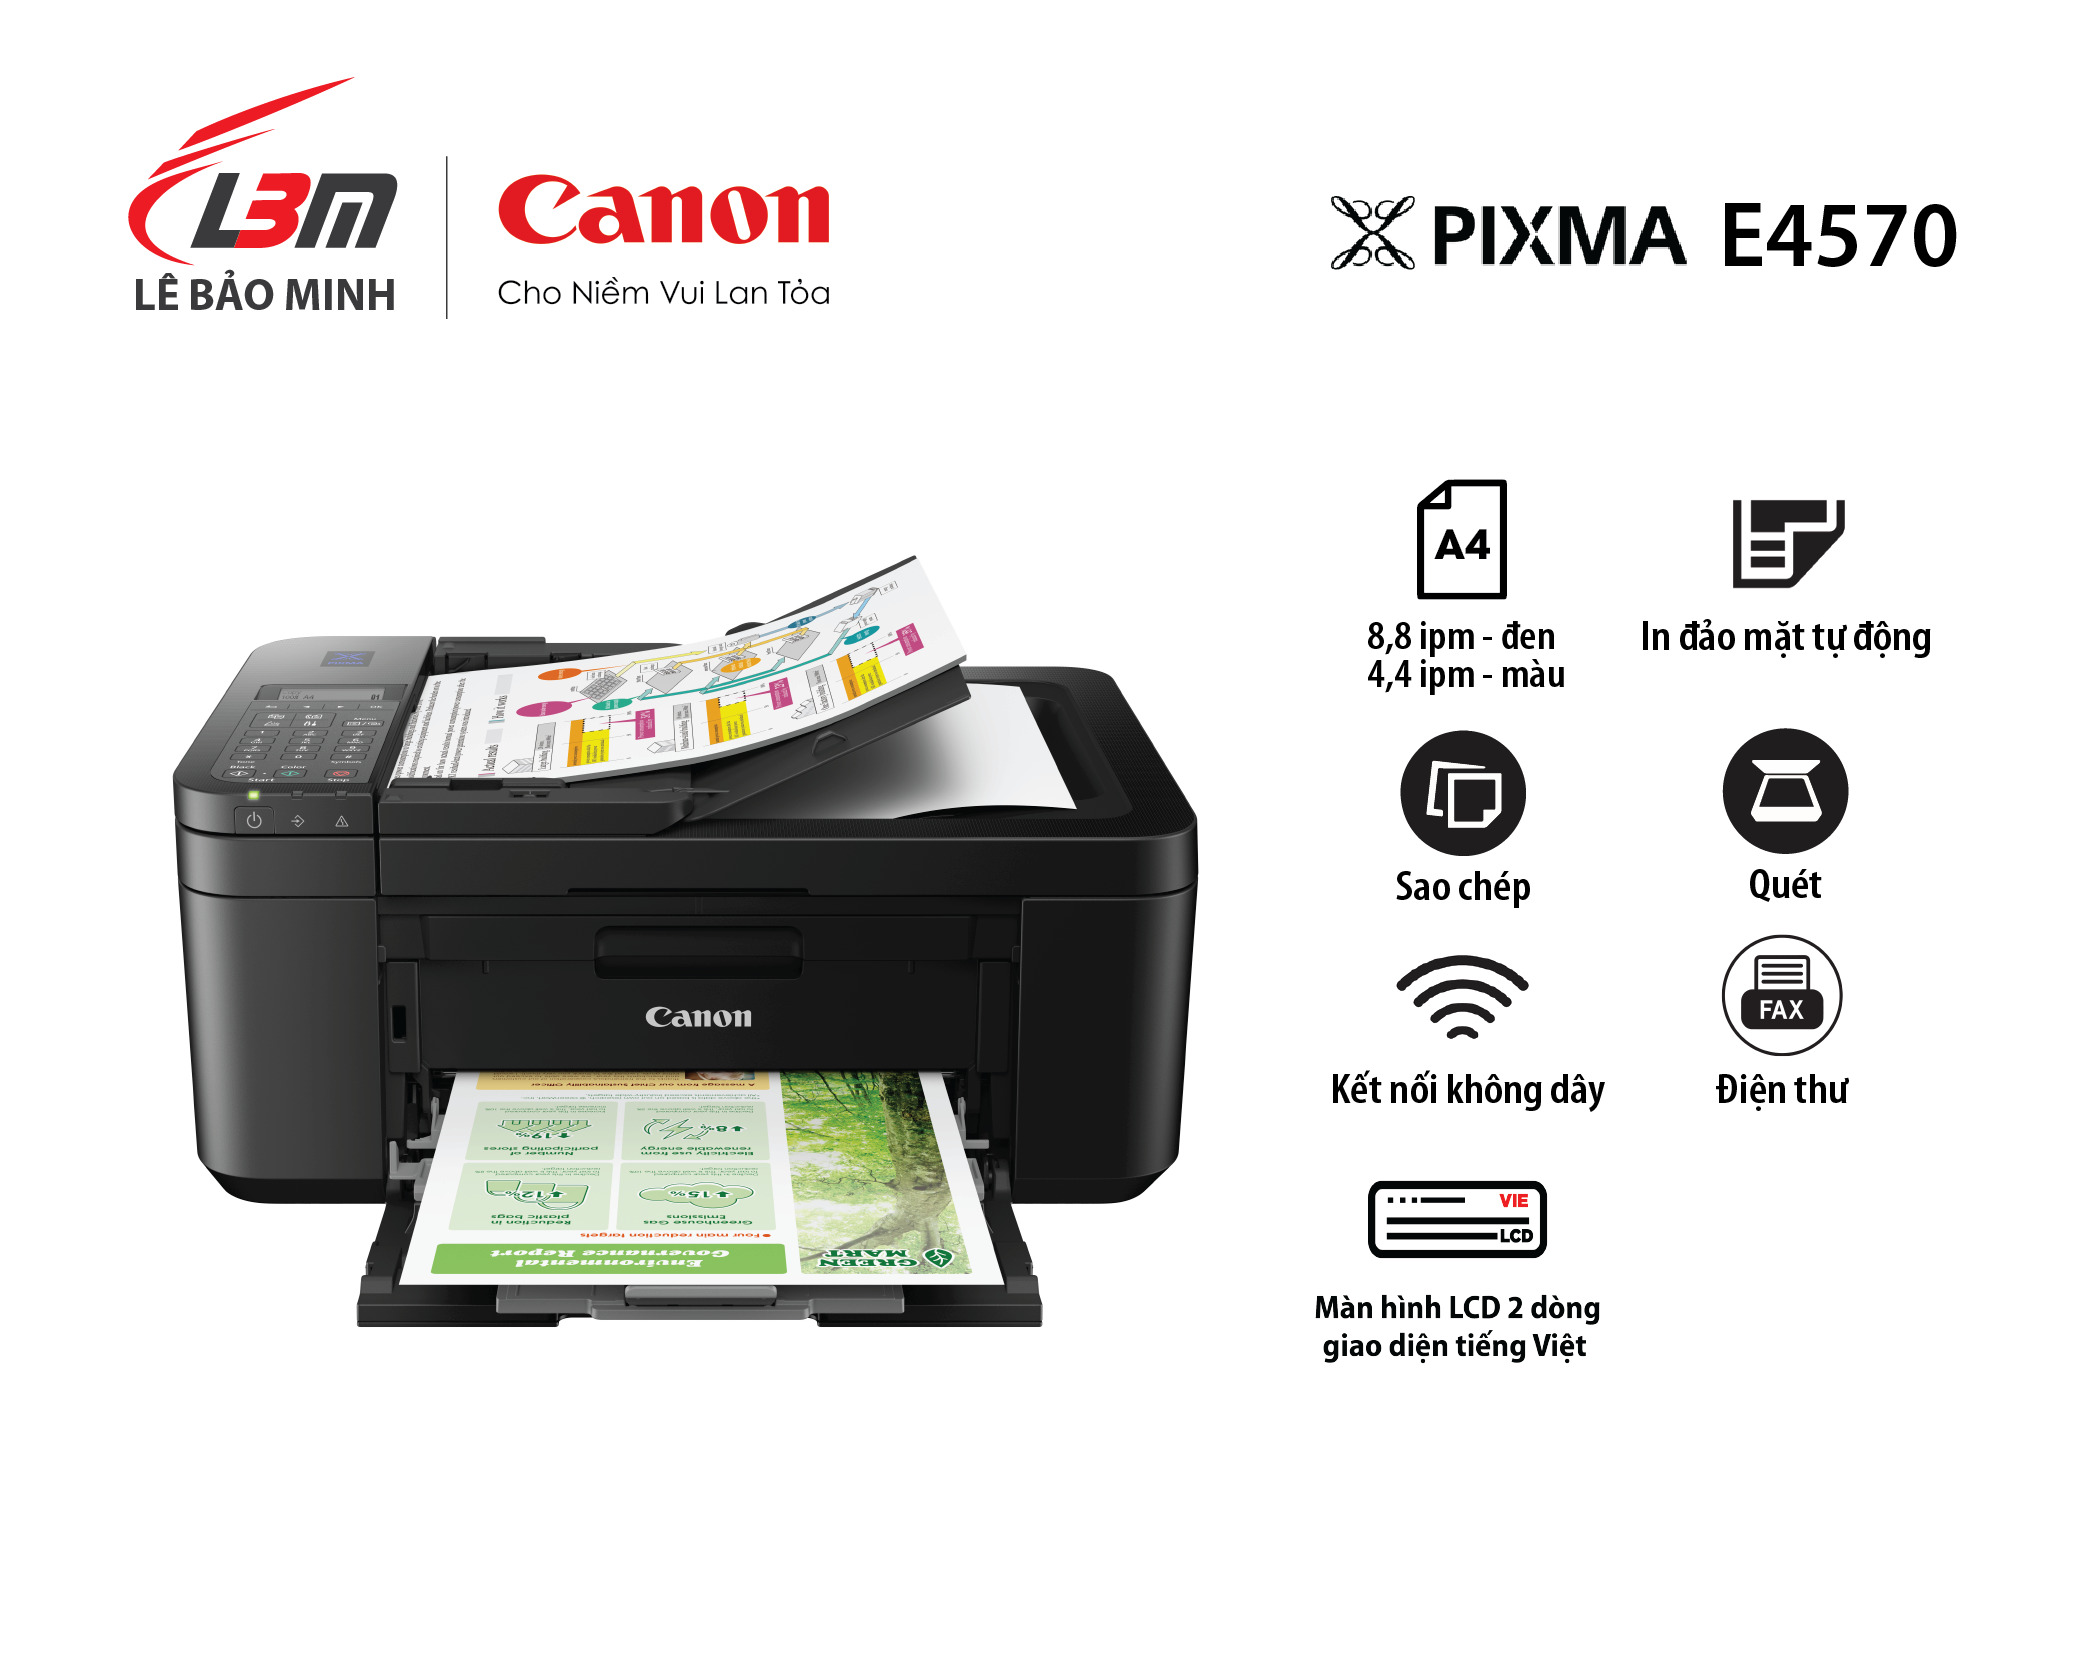 Máy in phun Canon Pixma E4570 đa chức năng có Fax